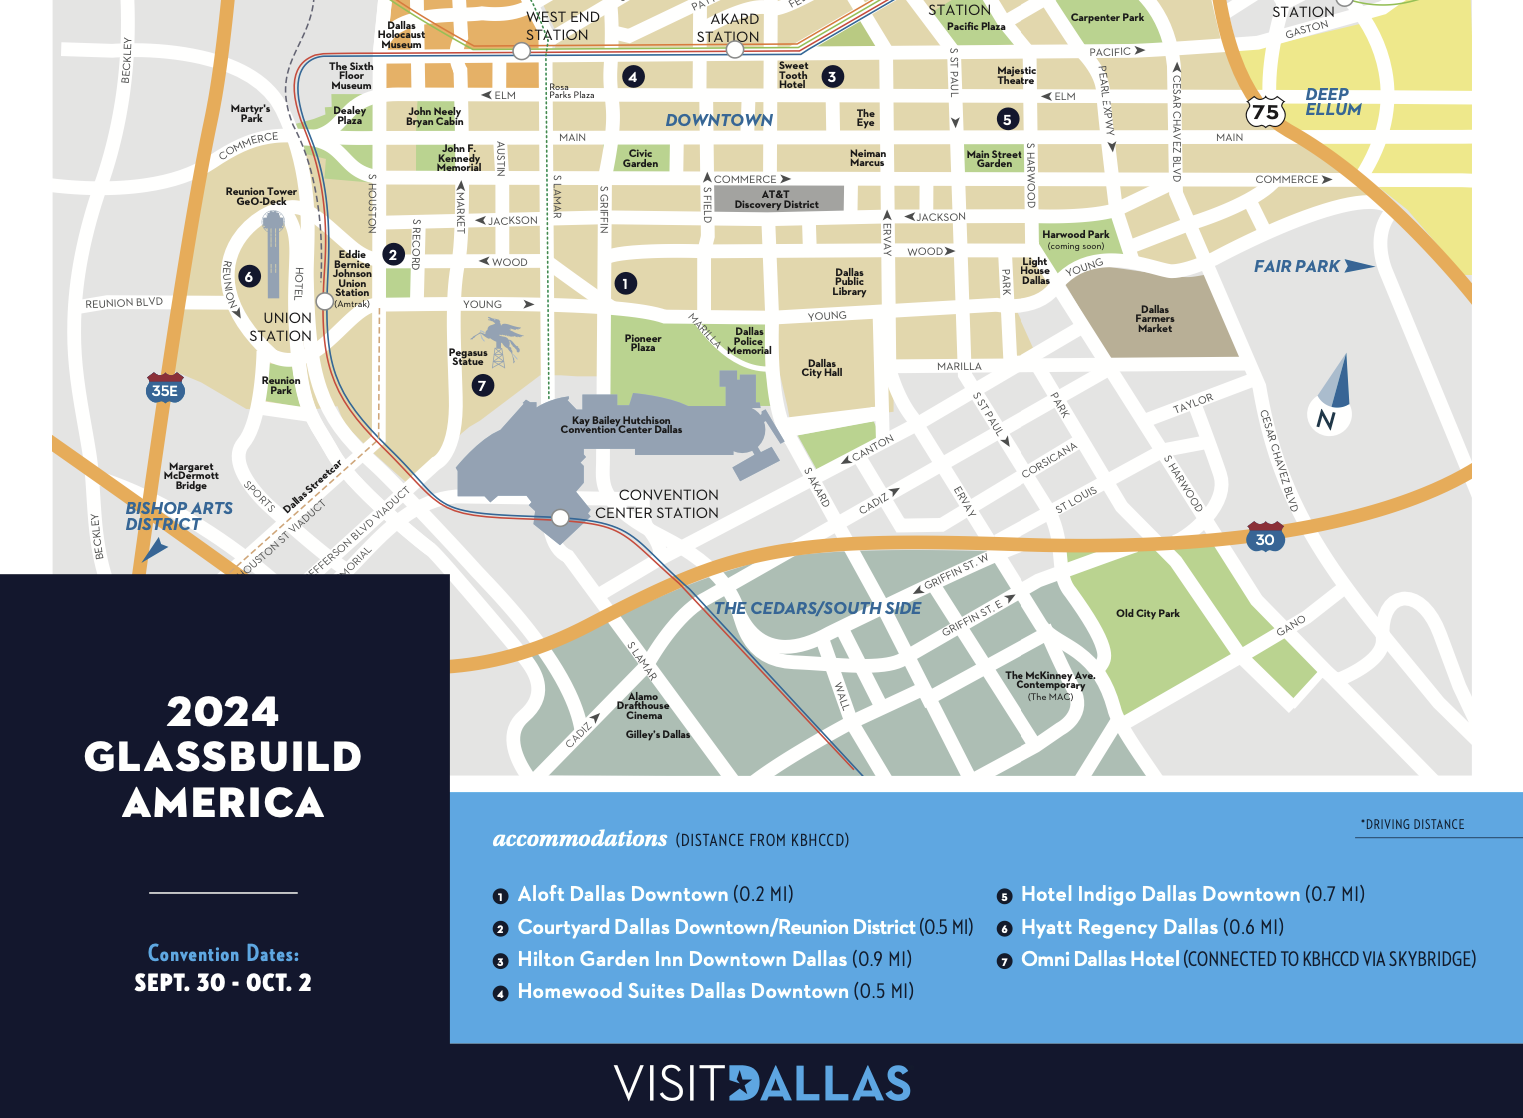 2024 GlassBuild America hotels in Dallas